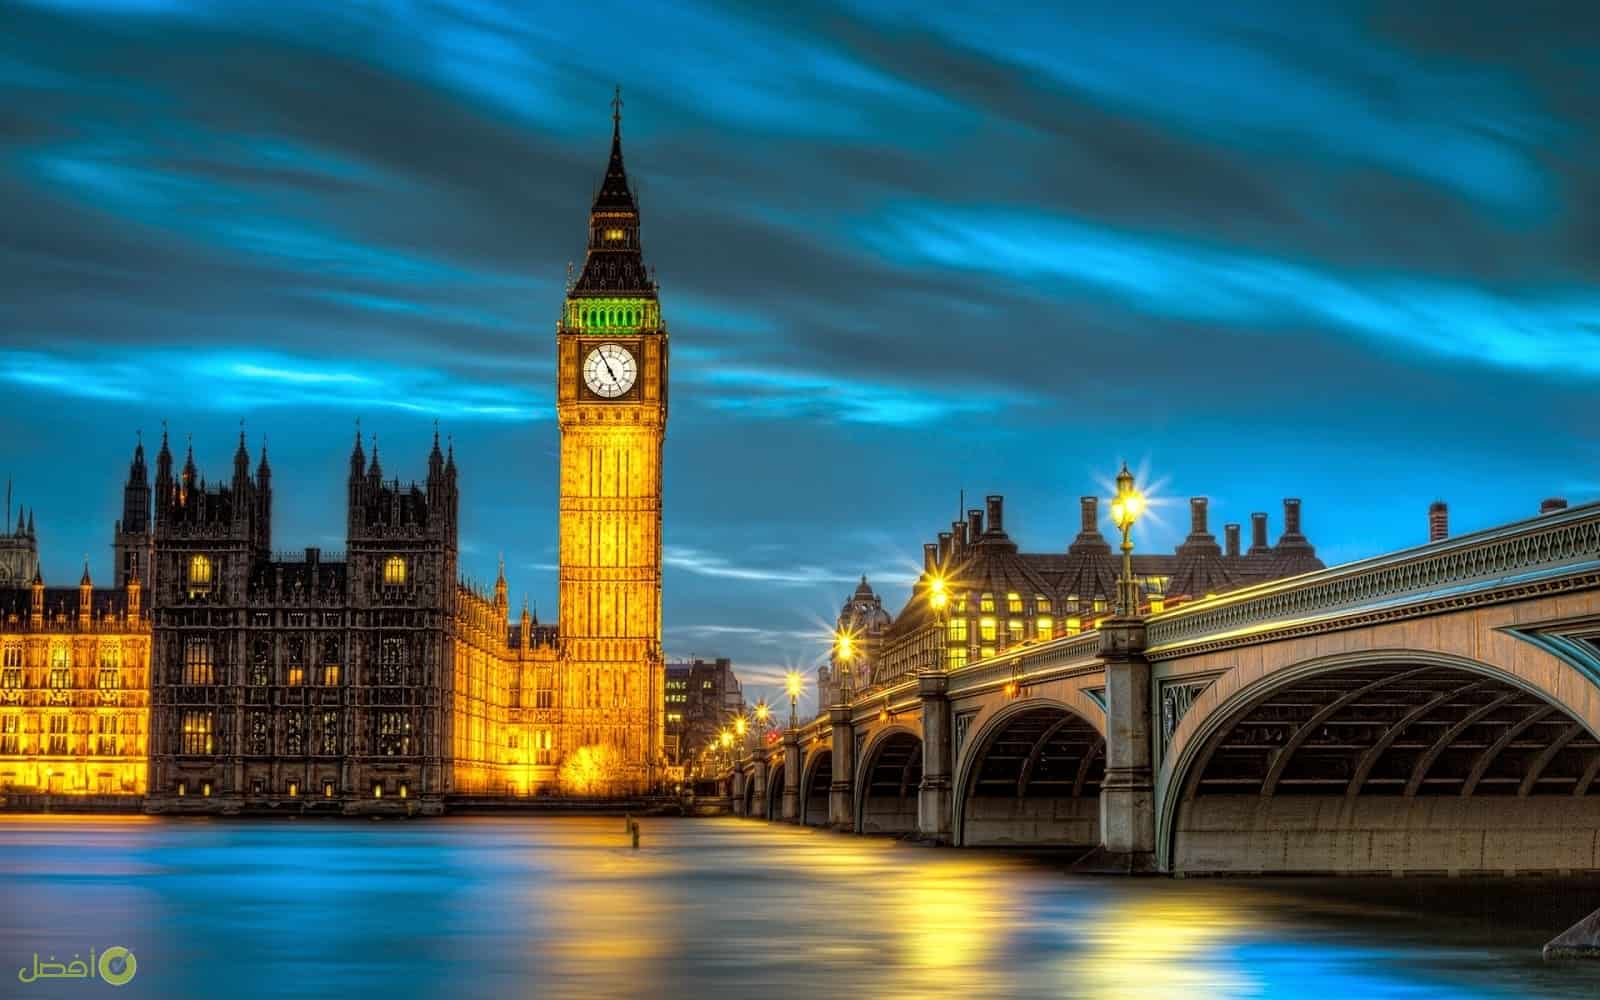 افضل فنادق لندن LONDON فنادق خمس نجوم في لندن العاصمة البريطانية